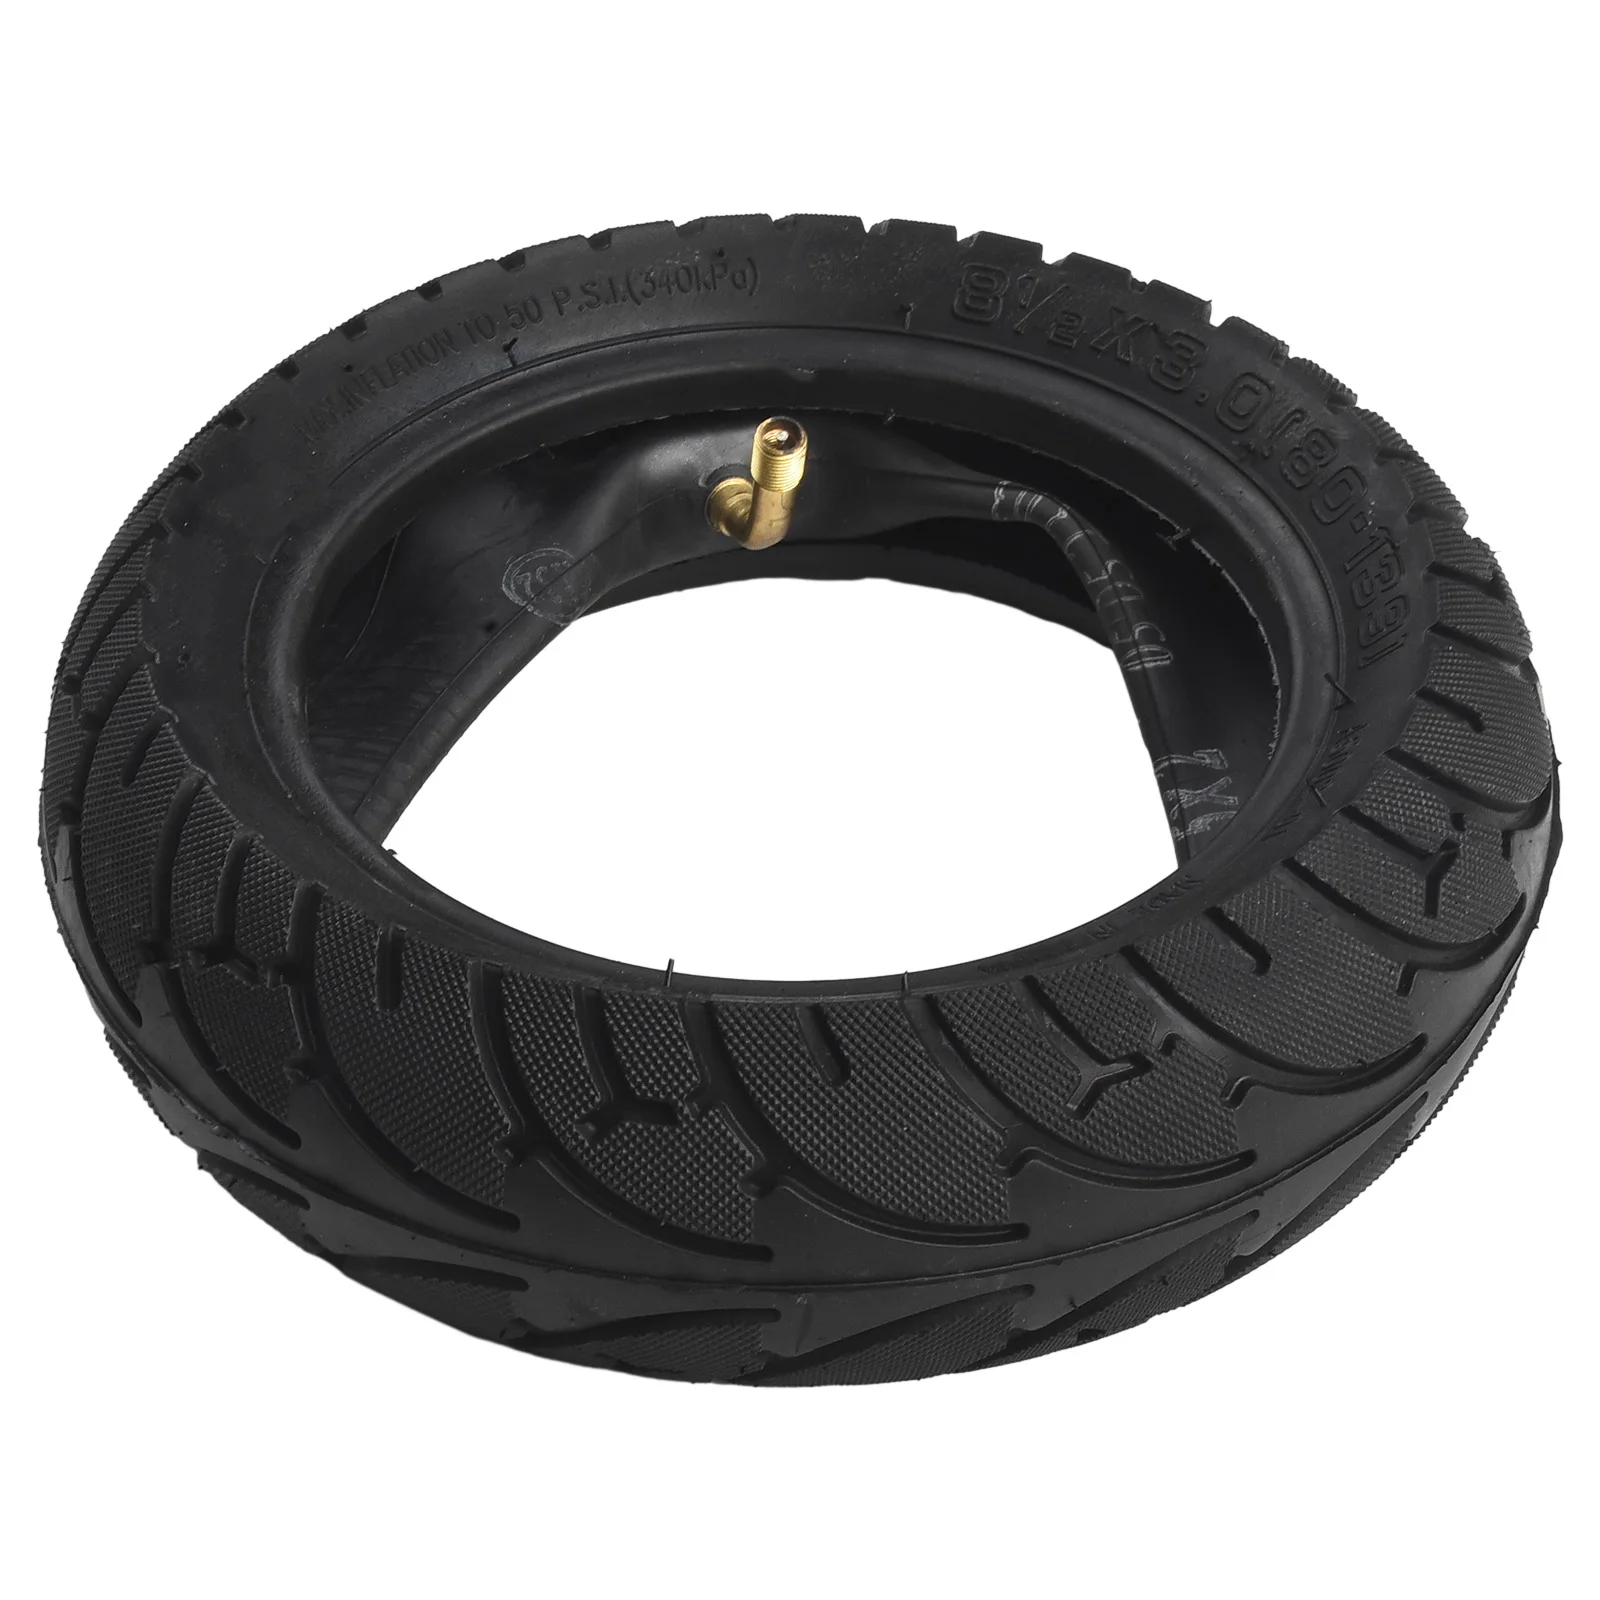 Juego de neumáticos para patinete eléctrico, repuesto exterior, resistente al desgaste, 8 1/2x3,0 (80-139), accesorios a estrenar